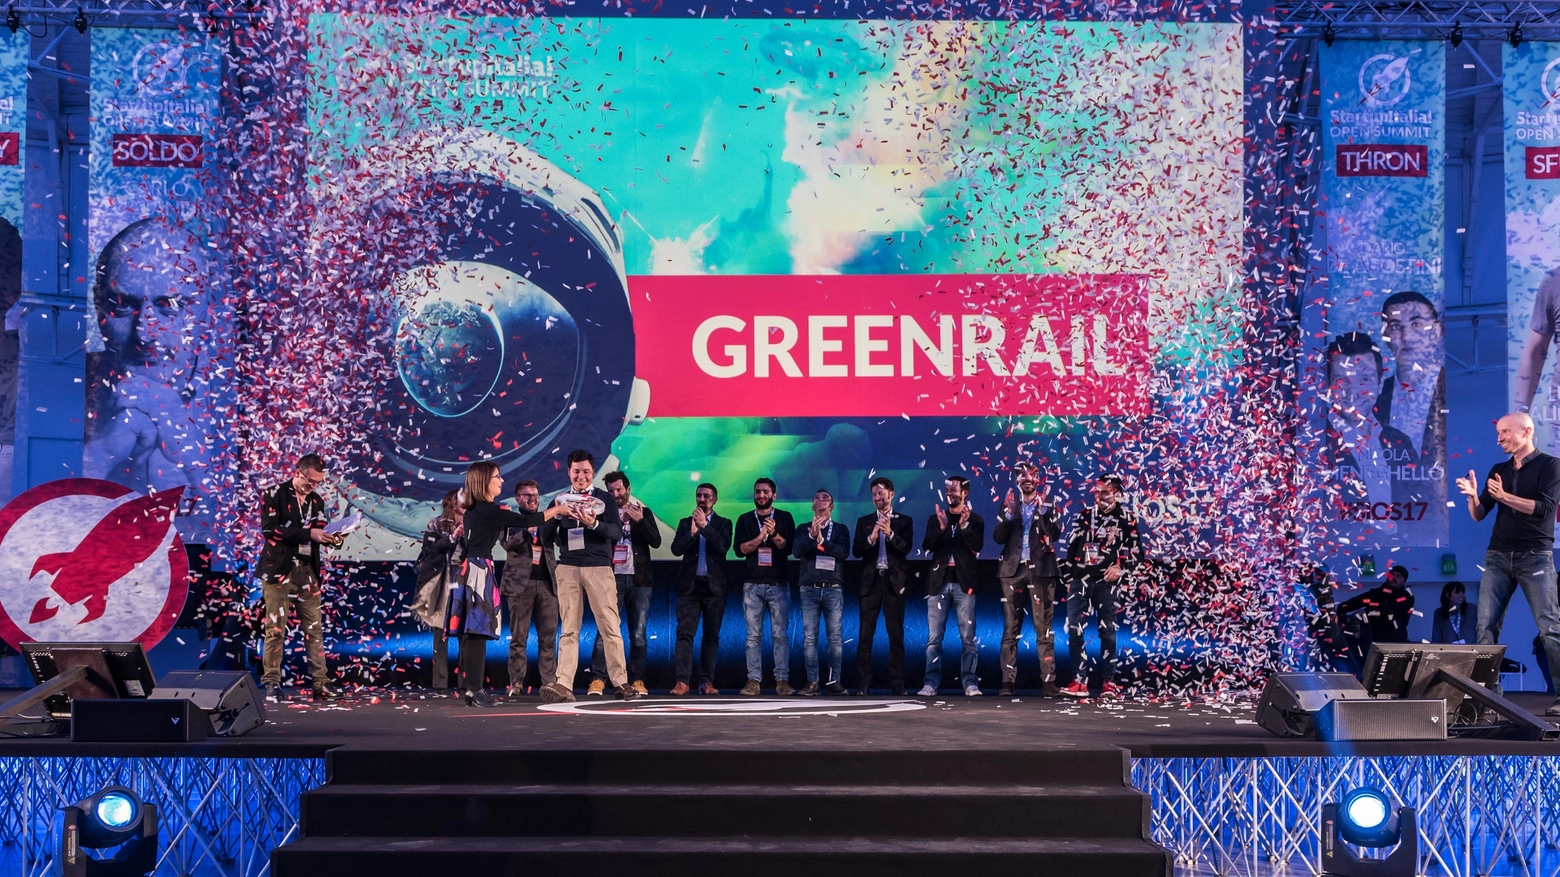 Greenrail migliore startup italiana del 2017